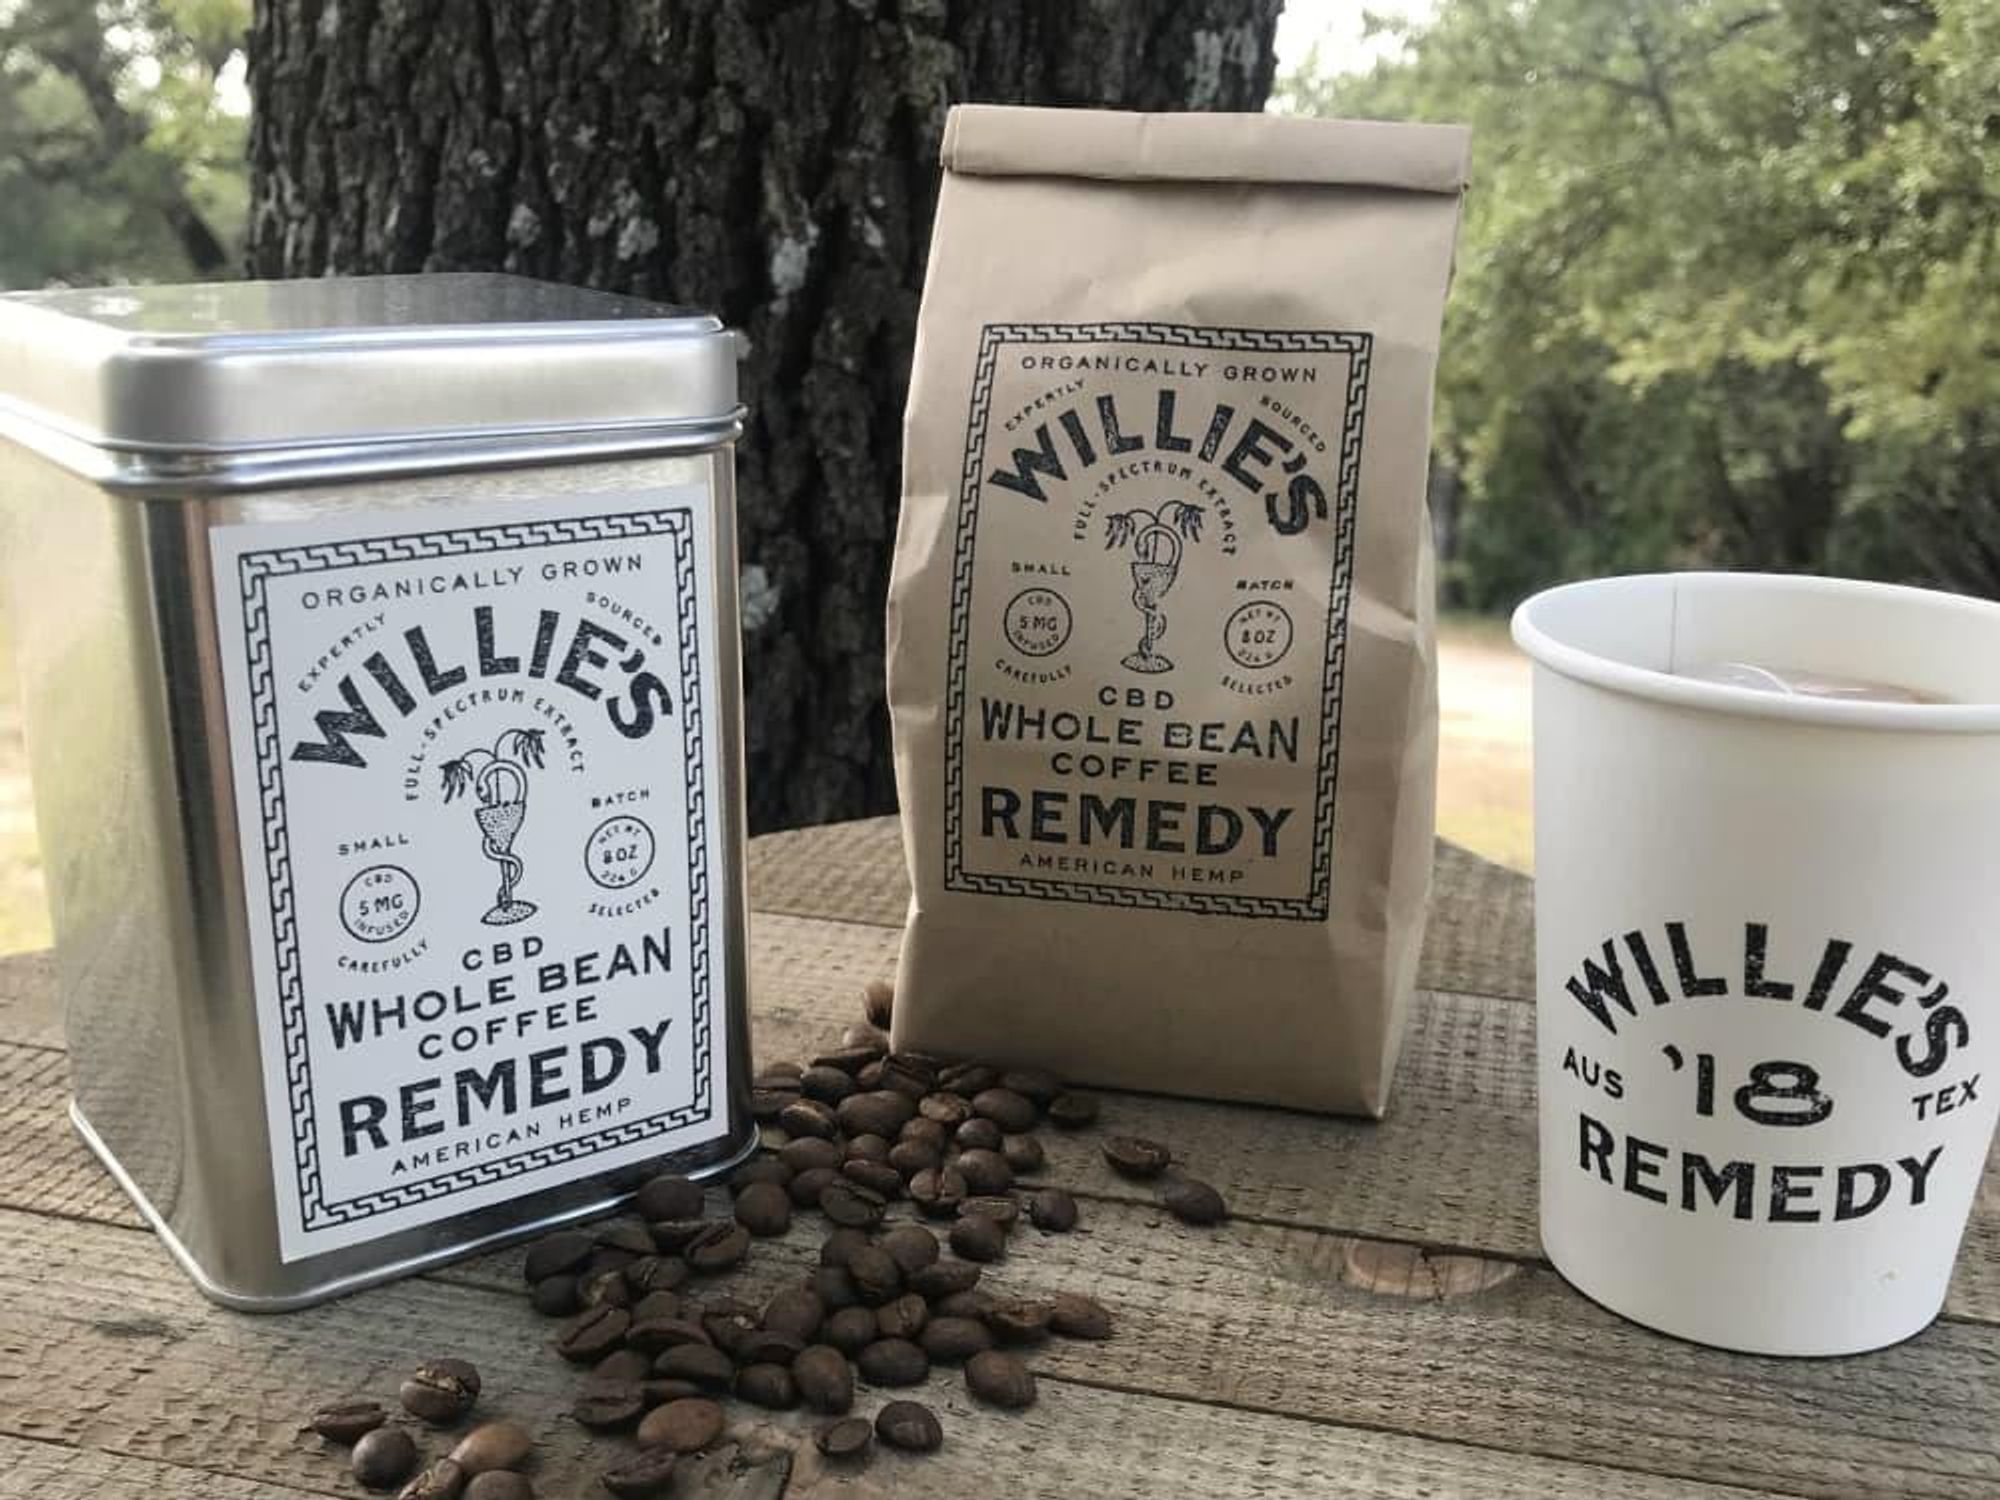 Willie's Remedy CBD coffee